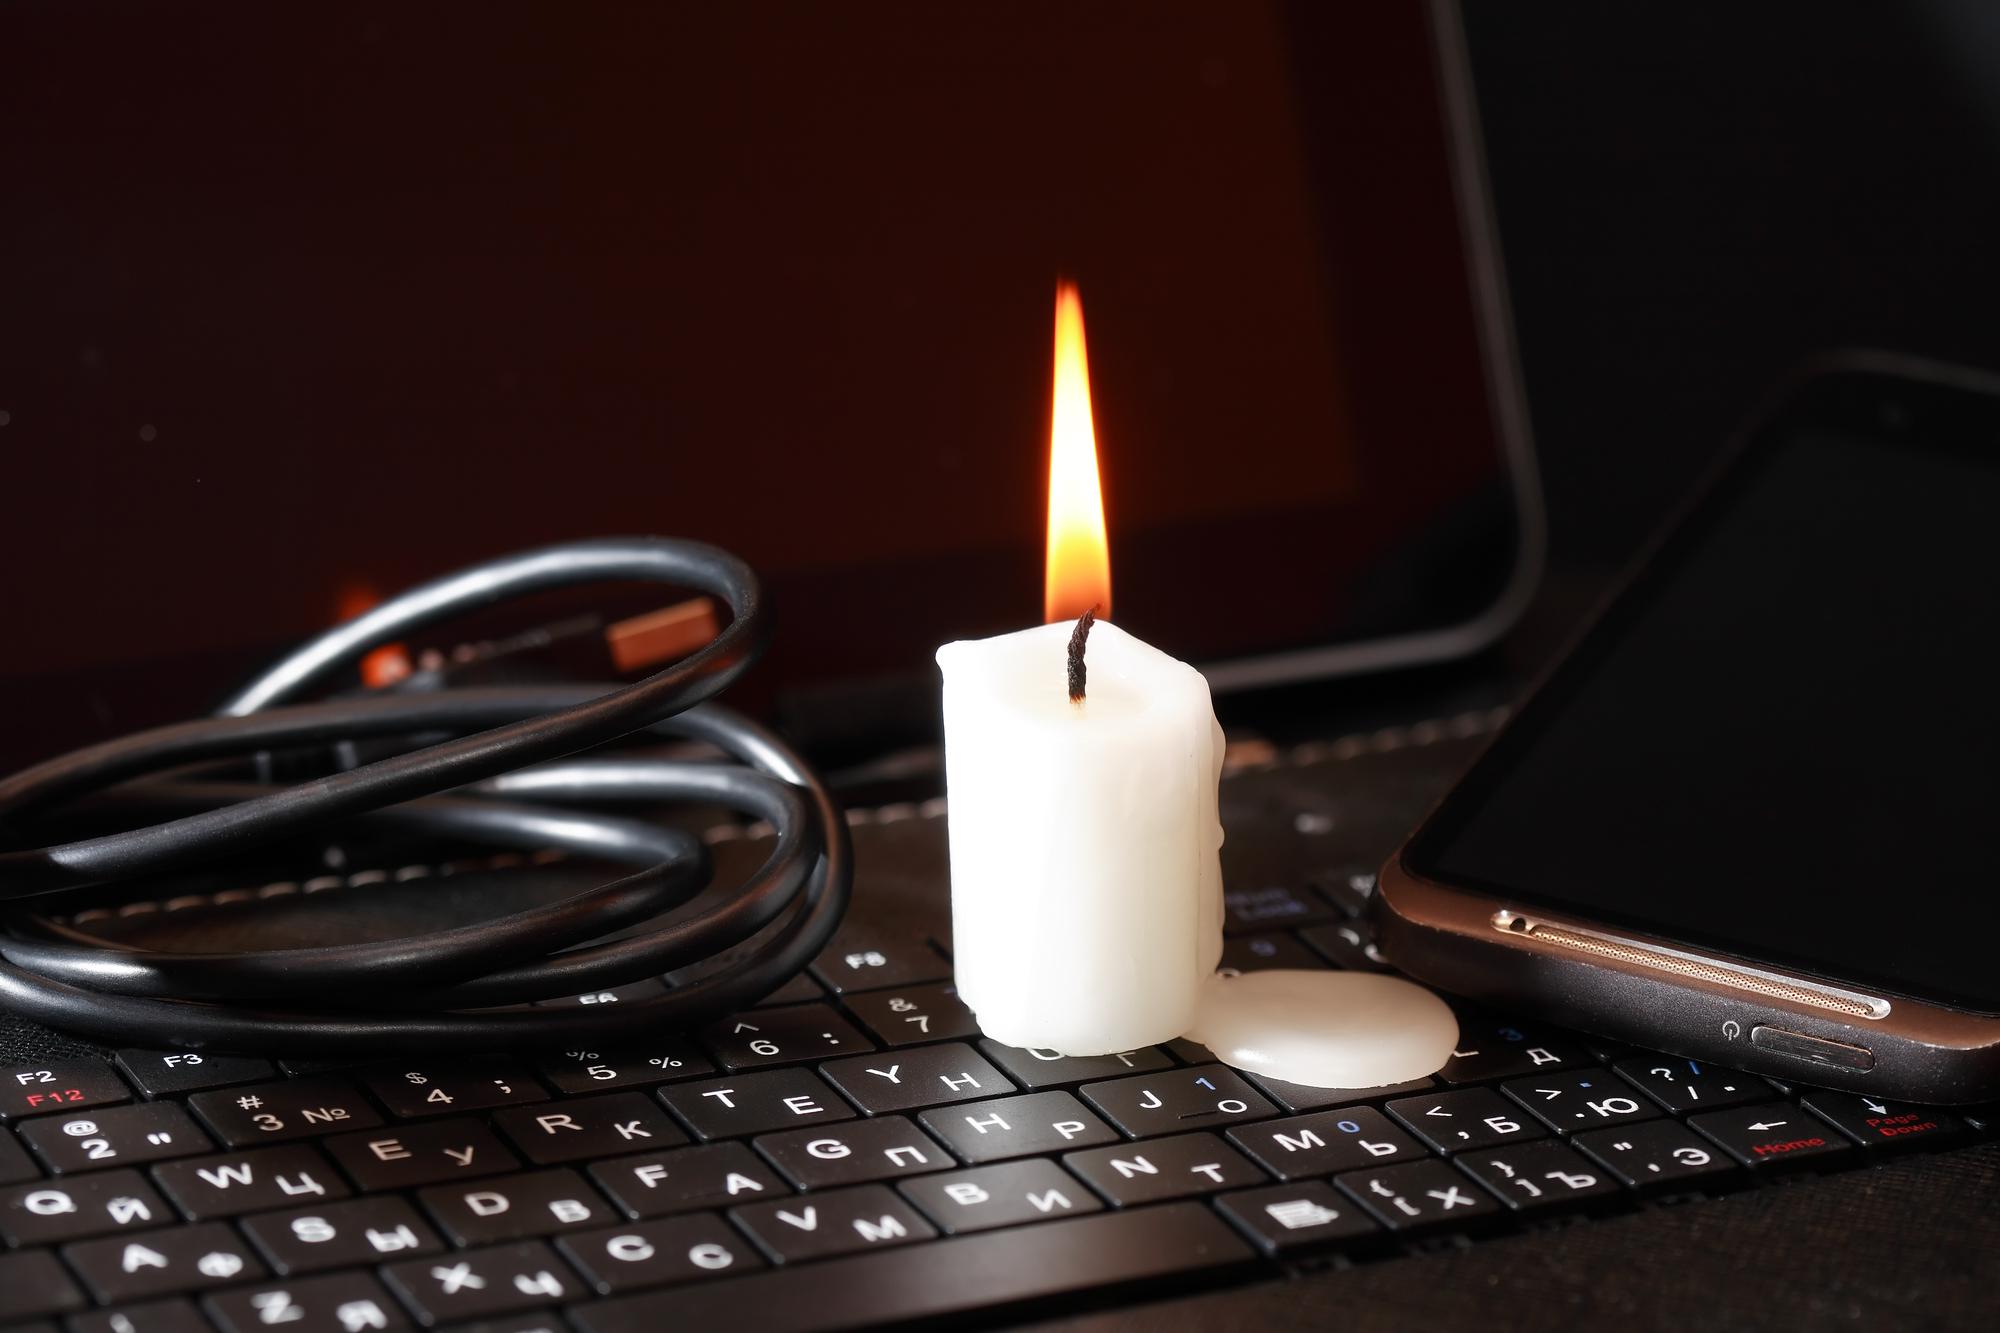 Eine Kerze brennt auf einem Laptop